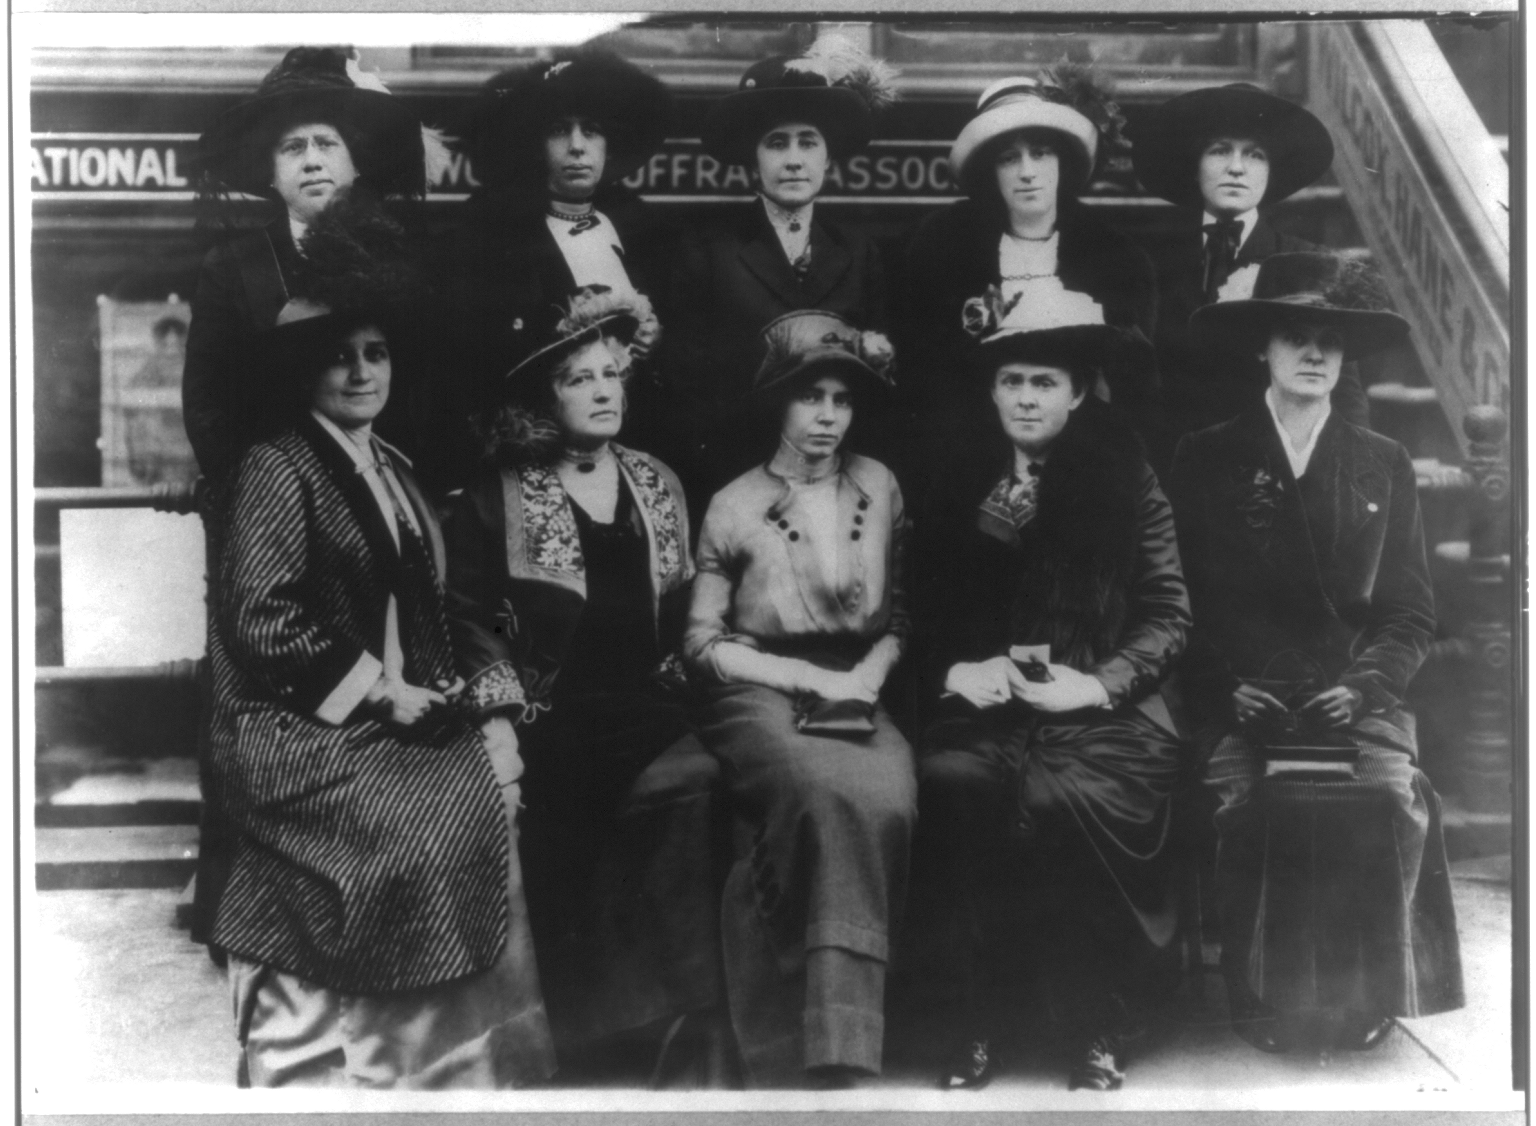 Suffragette movie screening